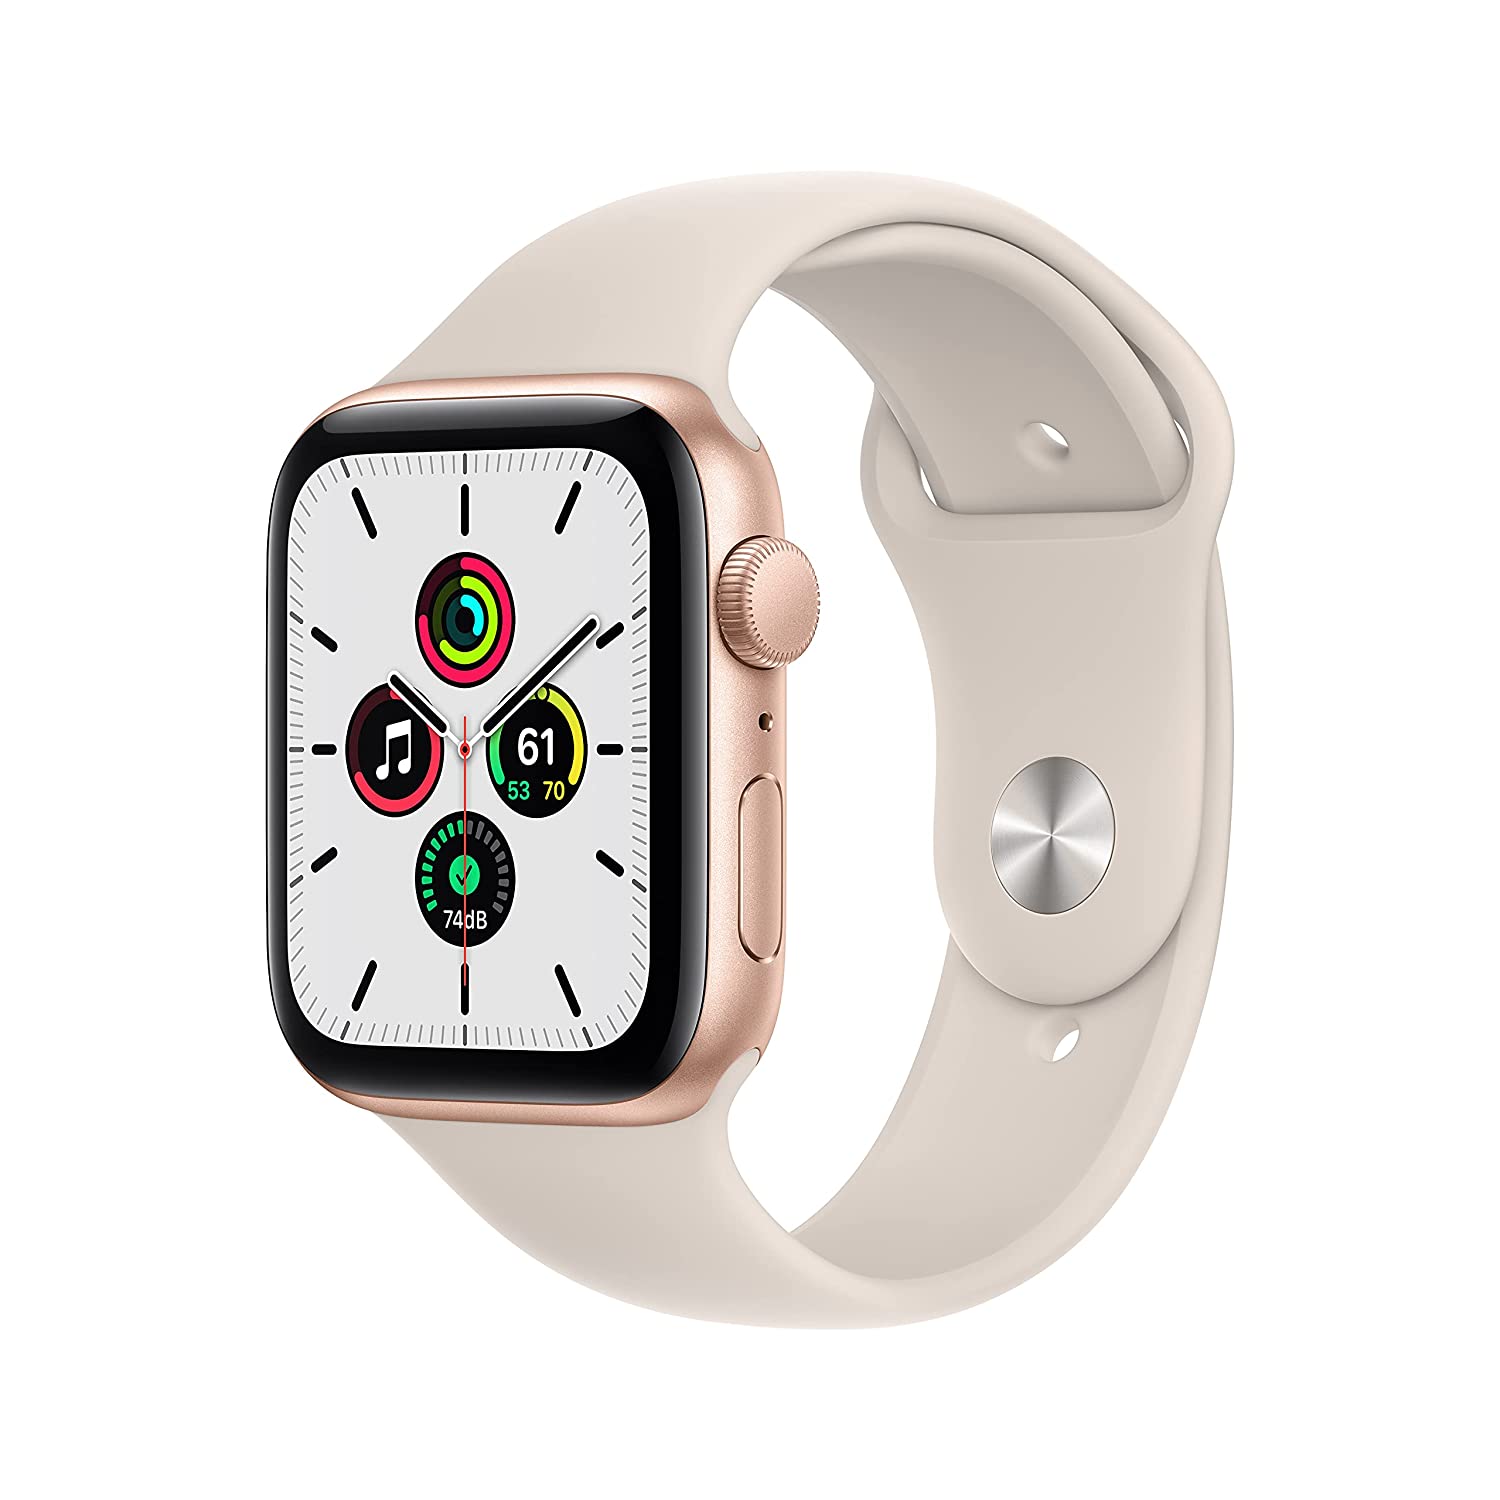 Amazon Deal: अपने पार्टनर से है प्यार तो गिफ्ट करें ये वॉच, फिटनेस और स्टाइल दोनों में नंबर-1 है Apple Watch